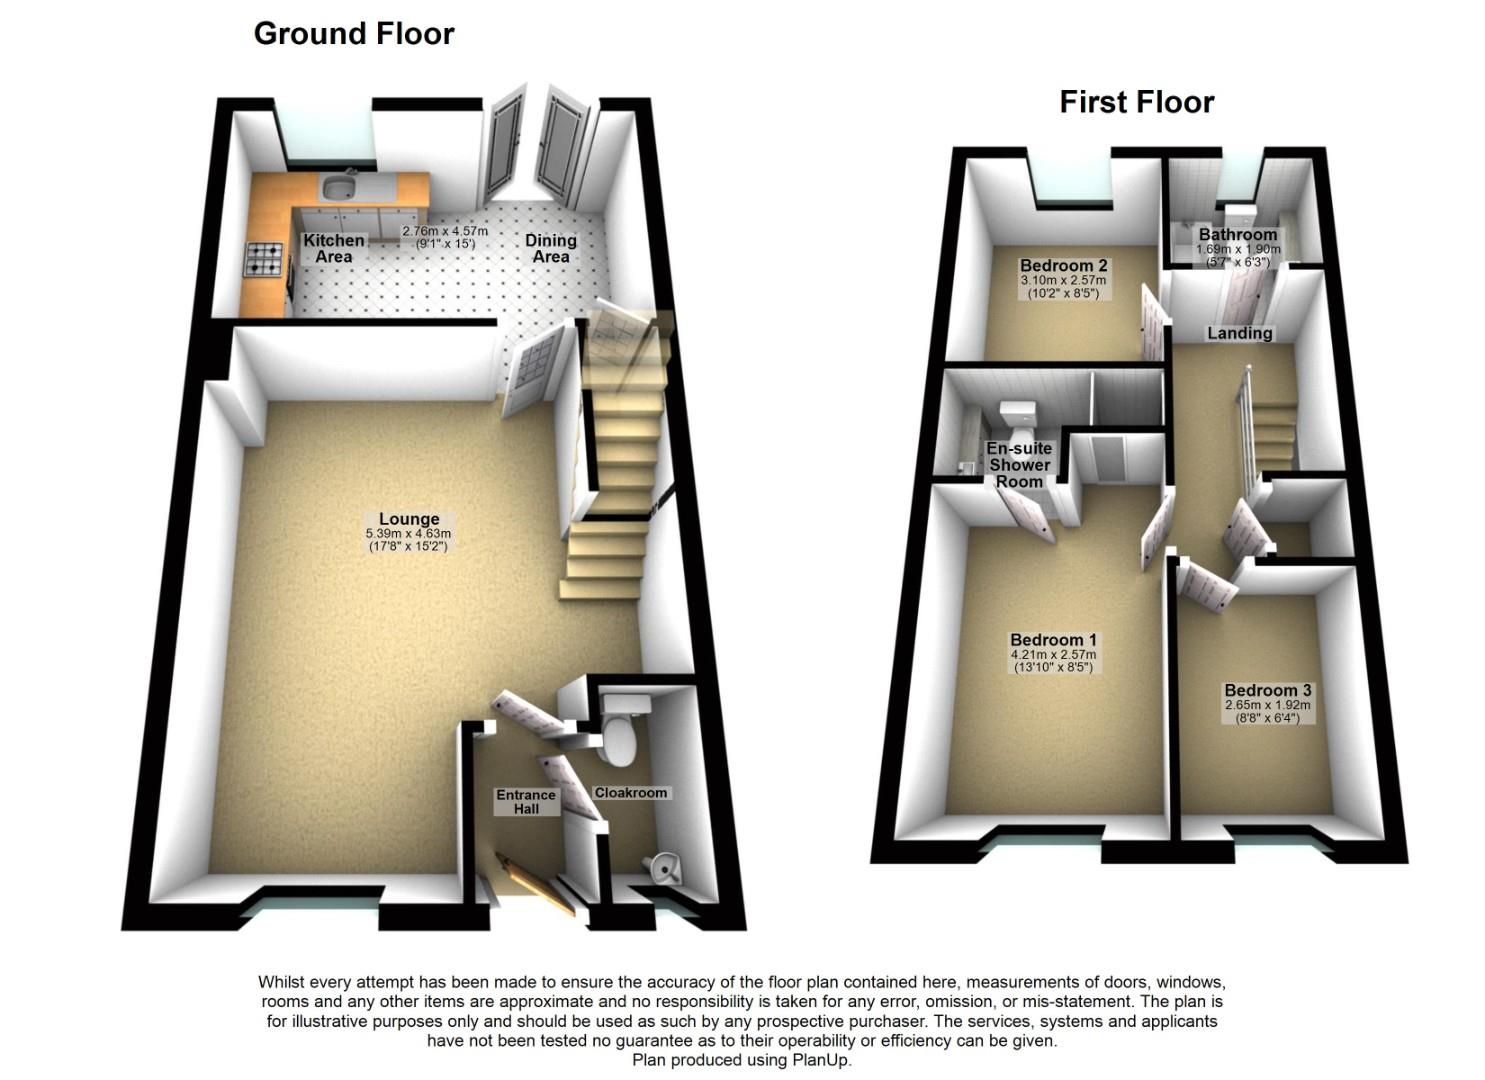 3 bed semi-detached house to rent in Schooner Circle, Newport - Property floorplan